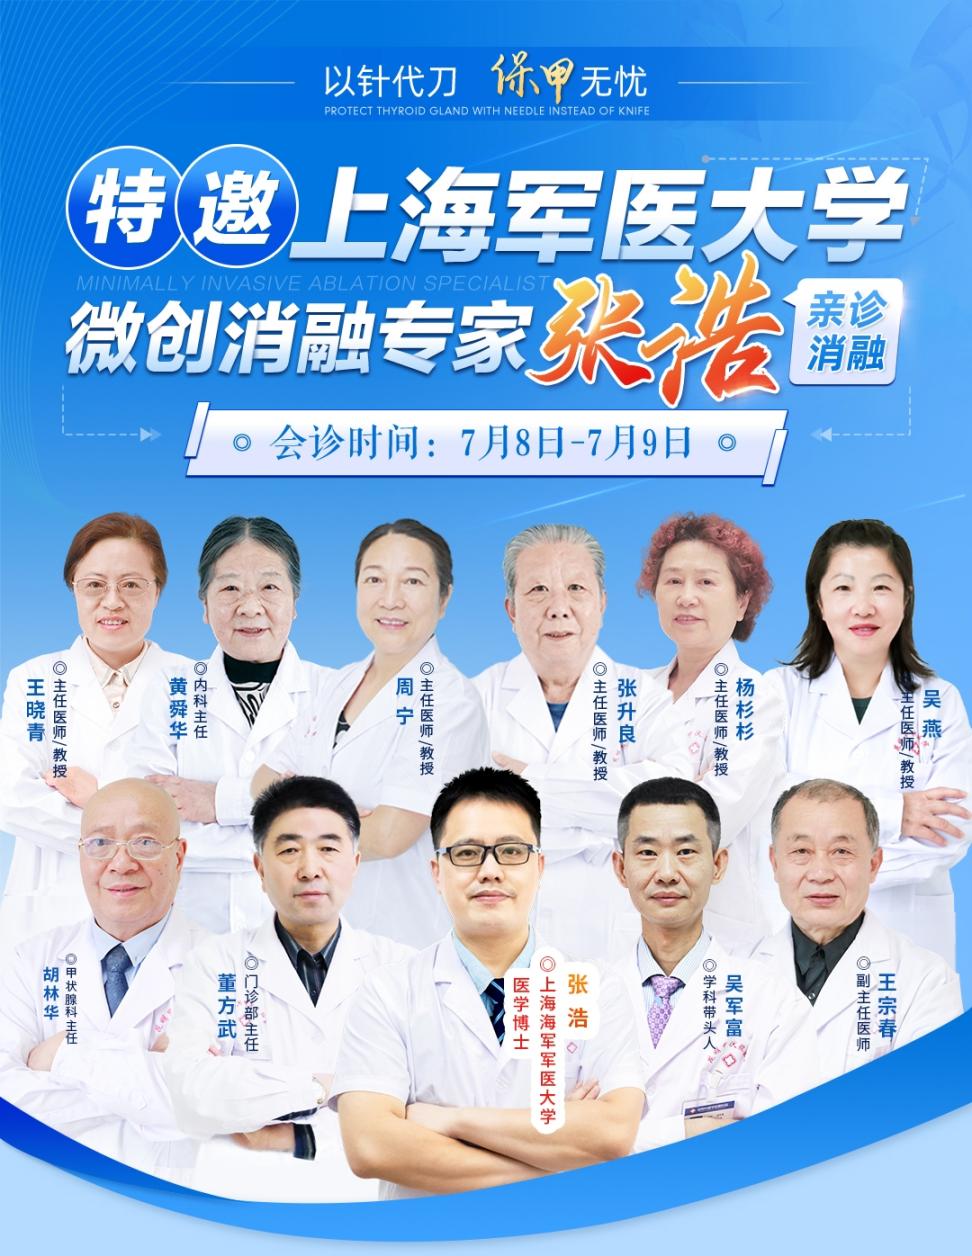 上海长海医院专家名单图片